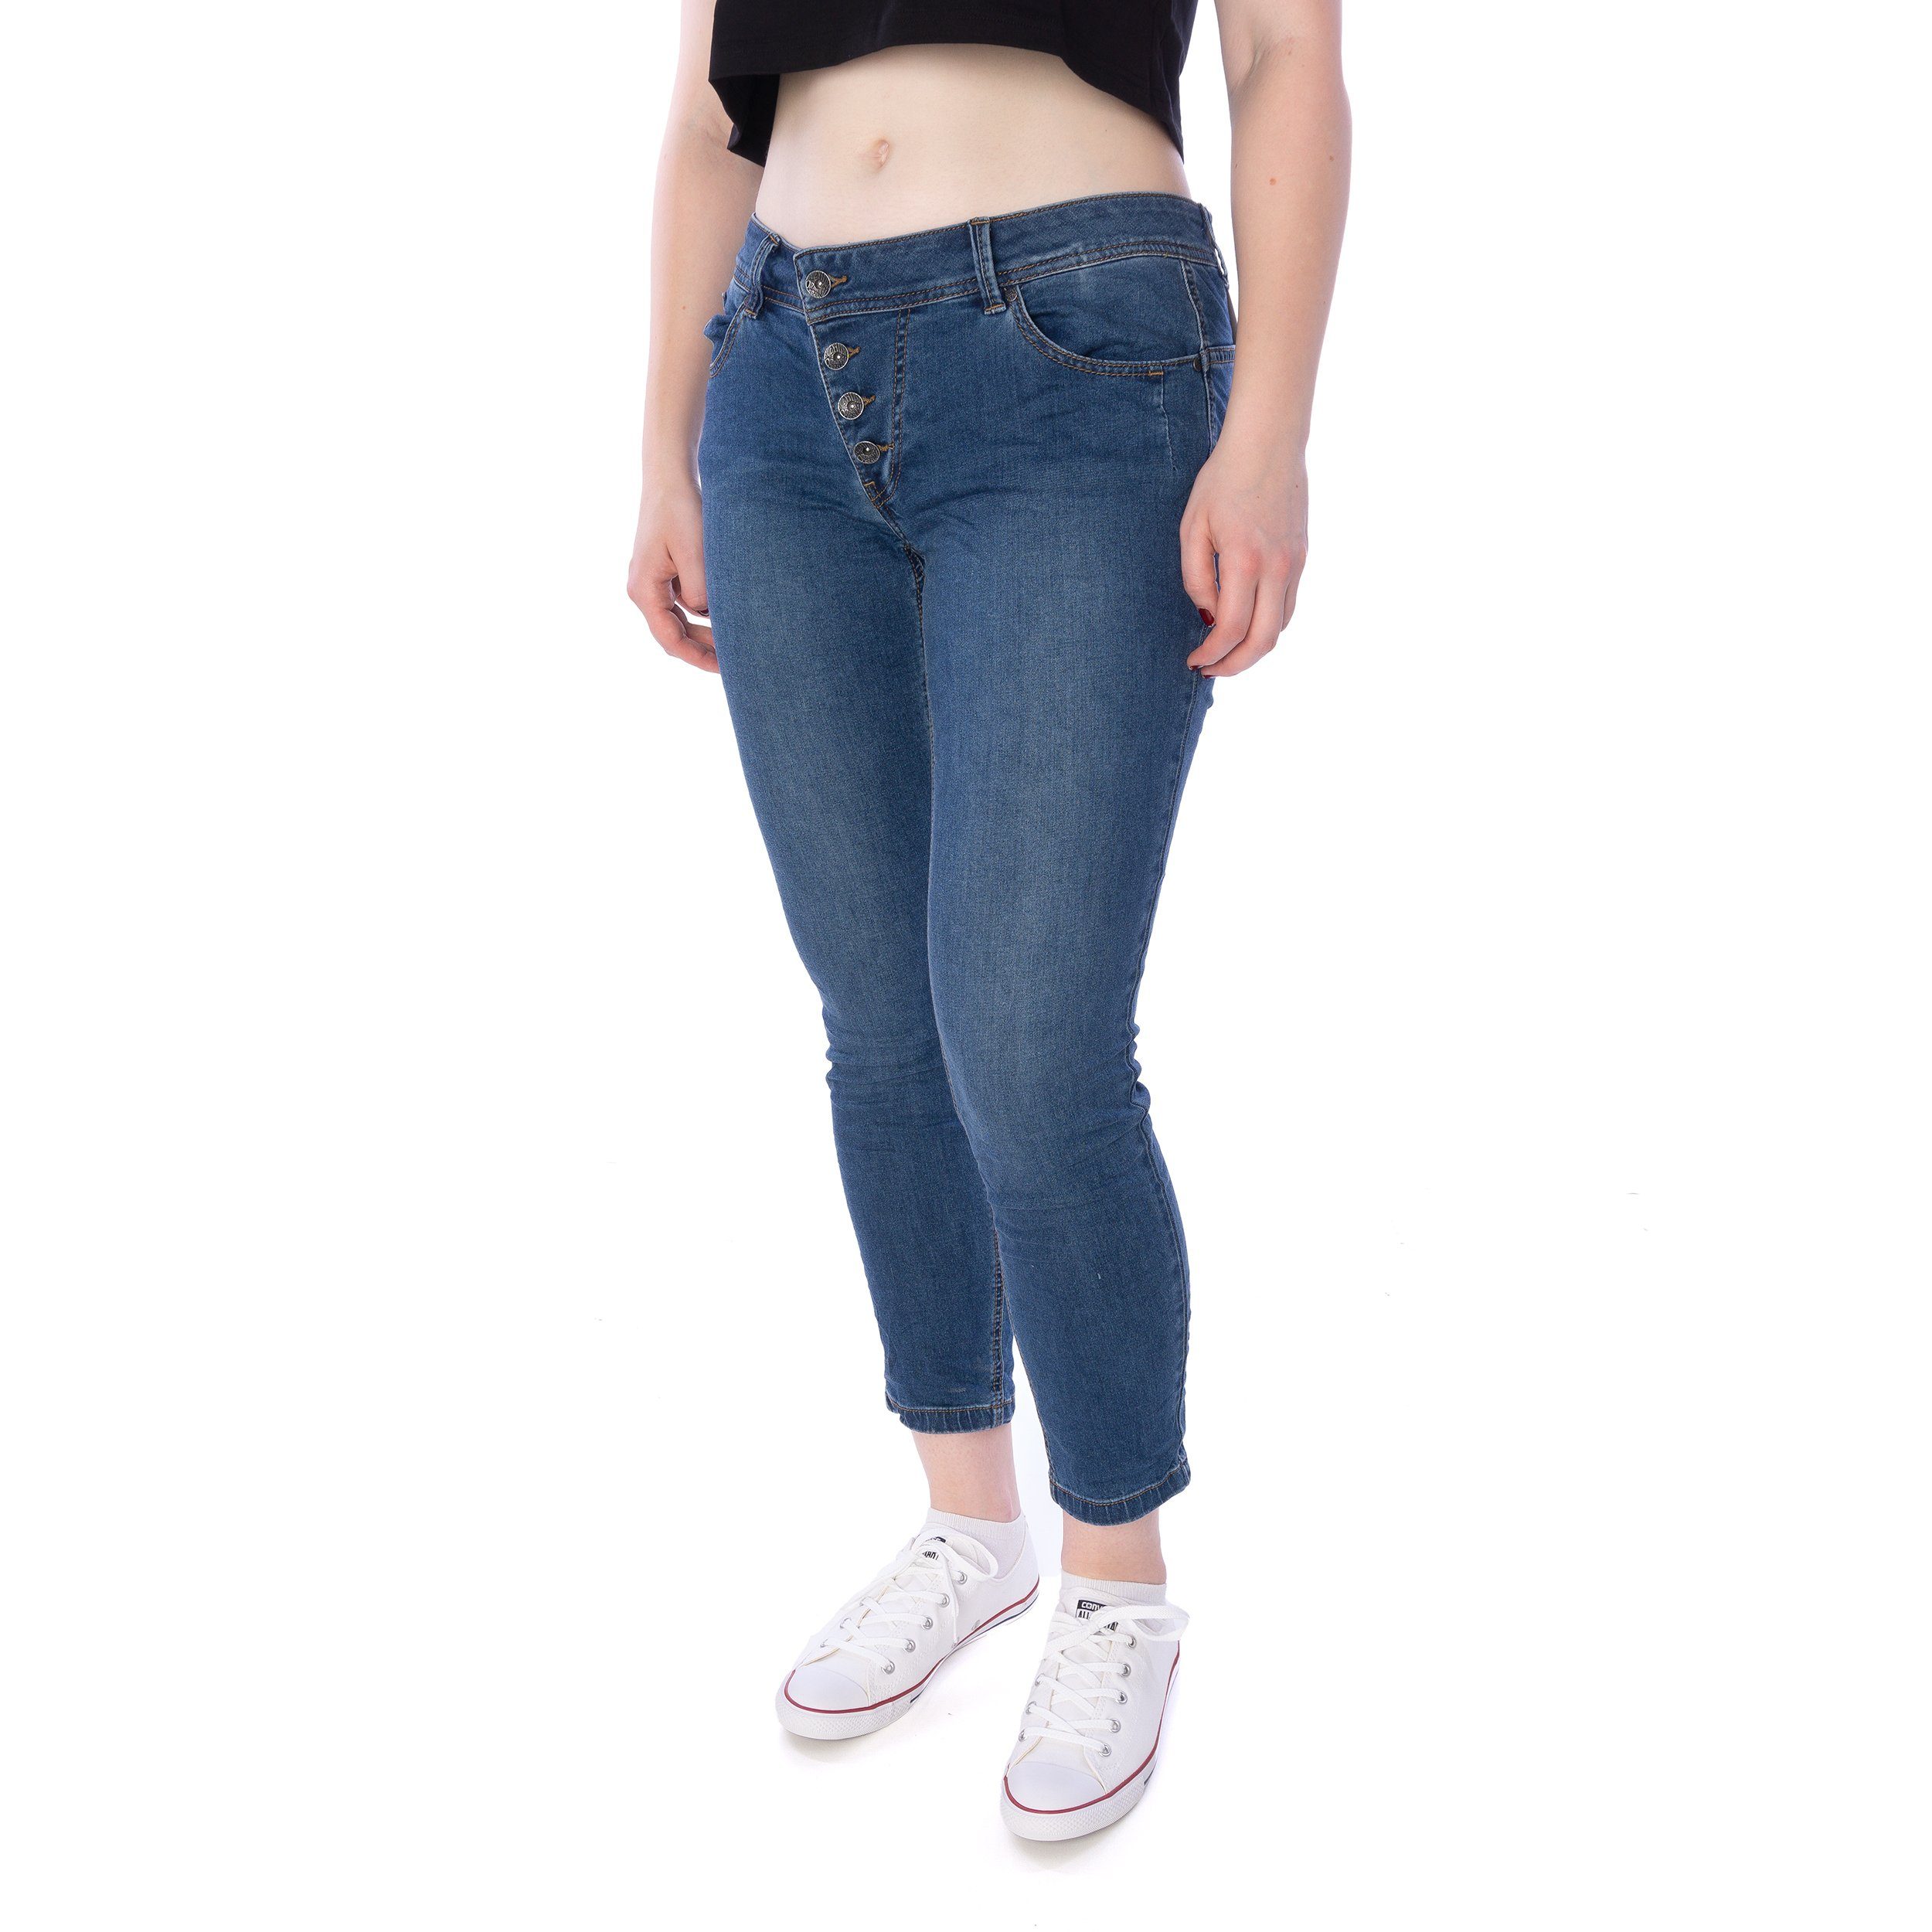 Buena Vista Slim-fit-Jeans Buena Vista Malibu 7/8 stretch denim Hose Damen Jeans blau